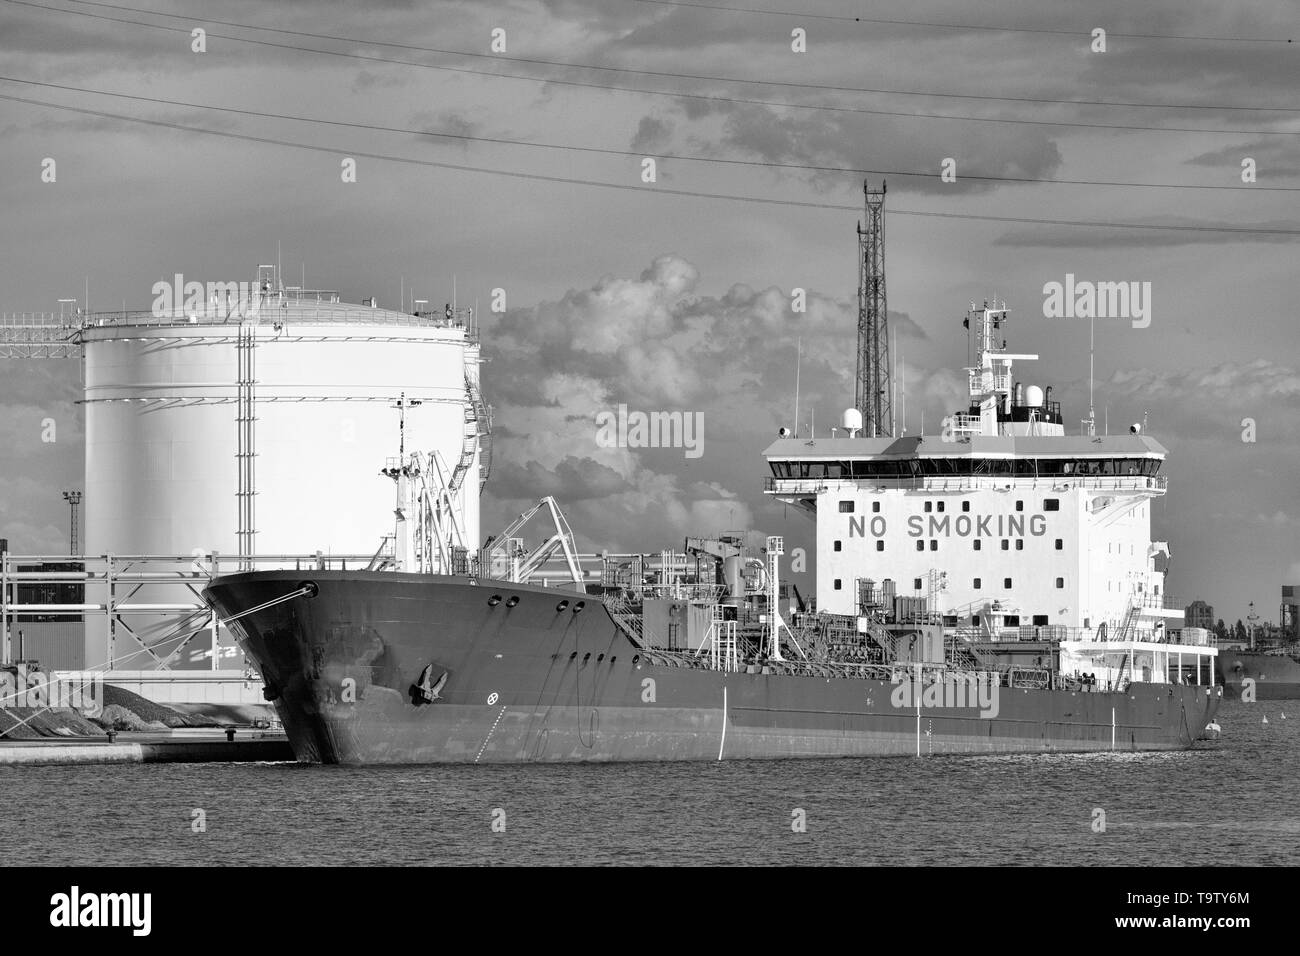 Tanker moored at une usine de production pétrochimique, Port d'Anvers, Belgique. Banque D'Images